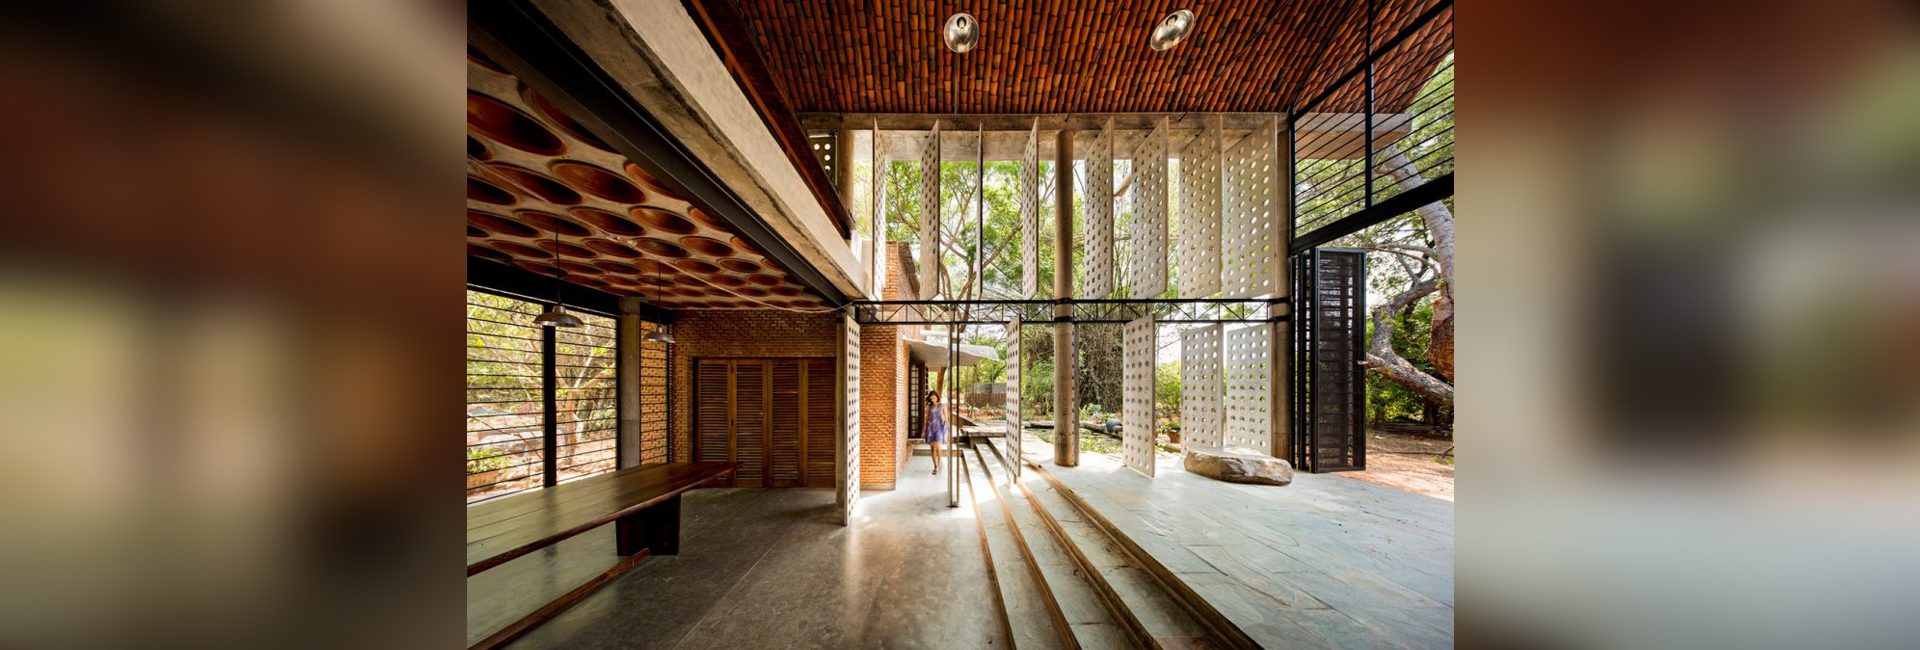 Архитектор Анупама Кундоо: на пересечении современности и устойчивости